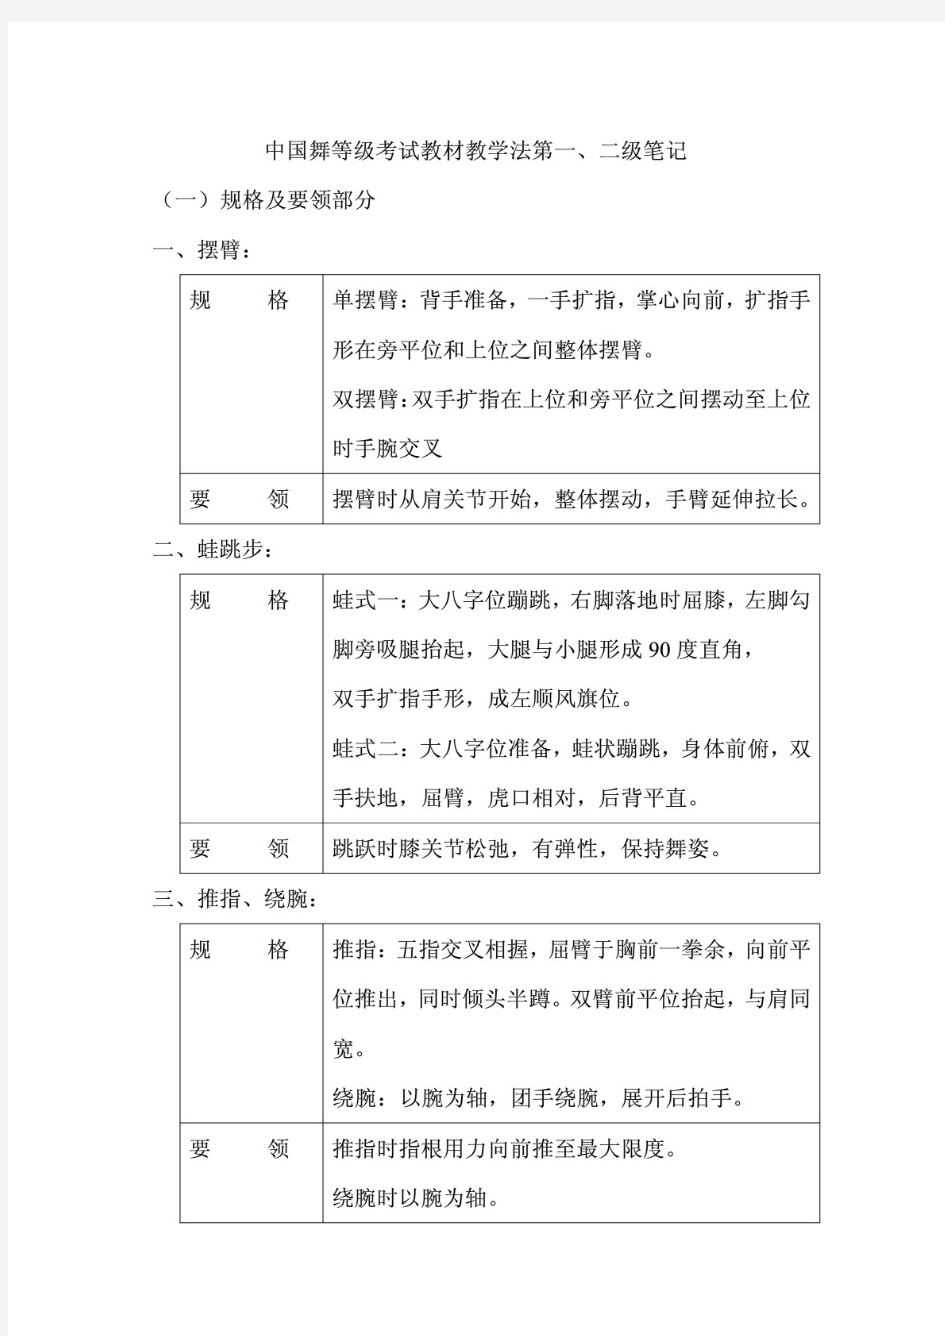 中国舞等级考试教材教学法第1-8级笔记 PDF